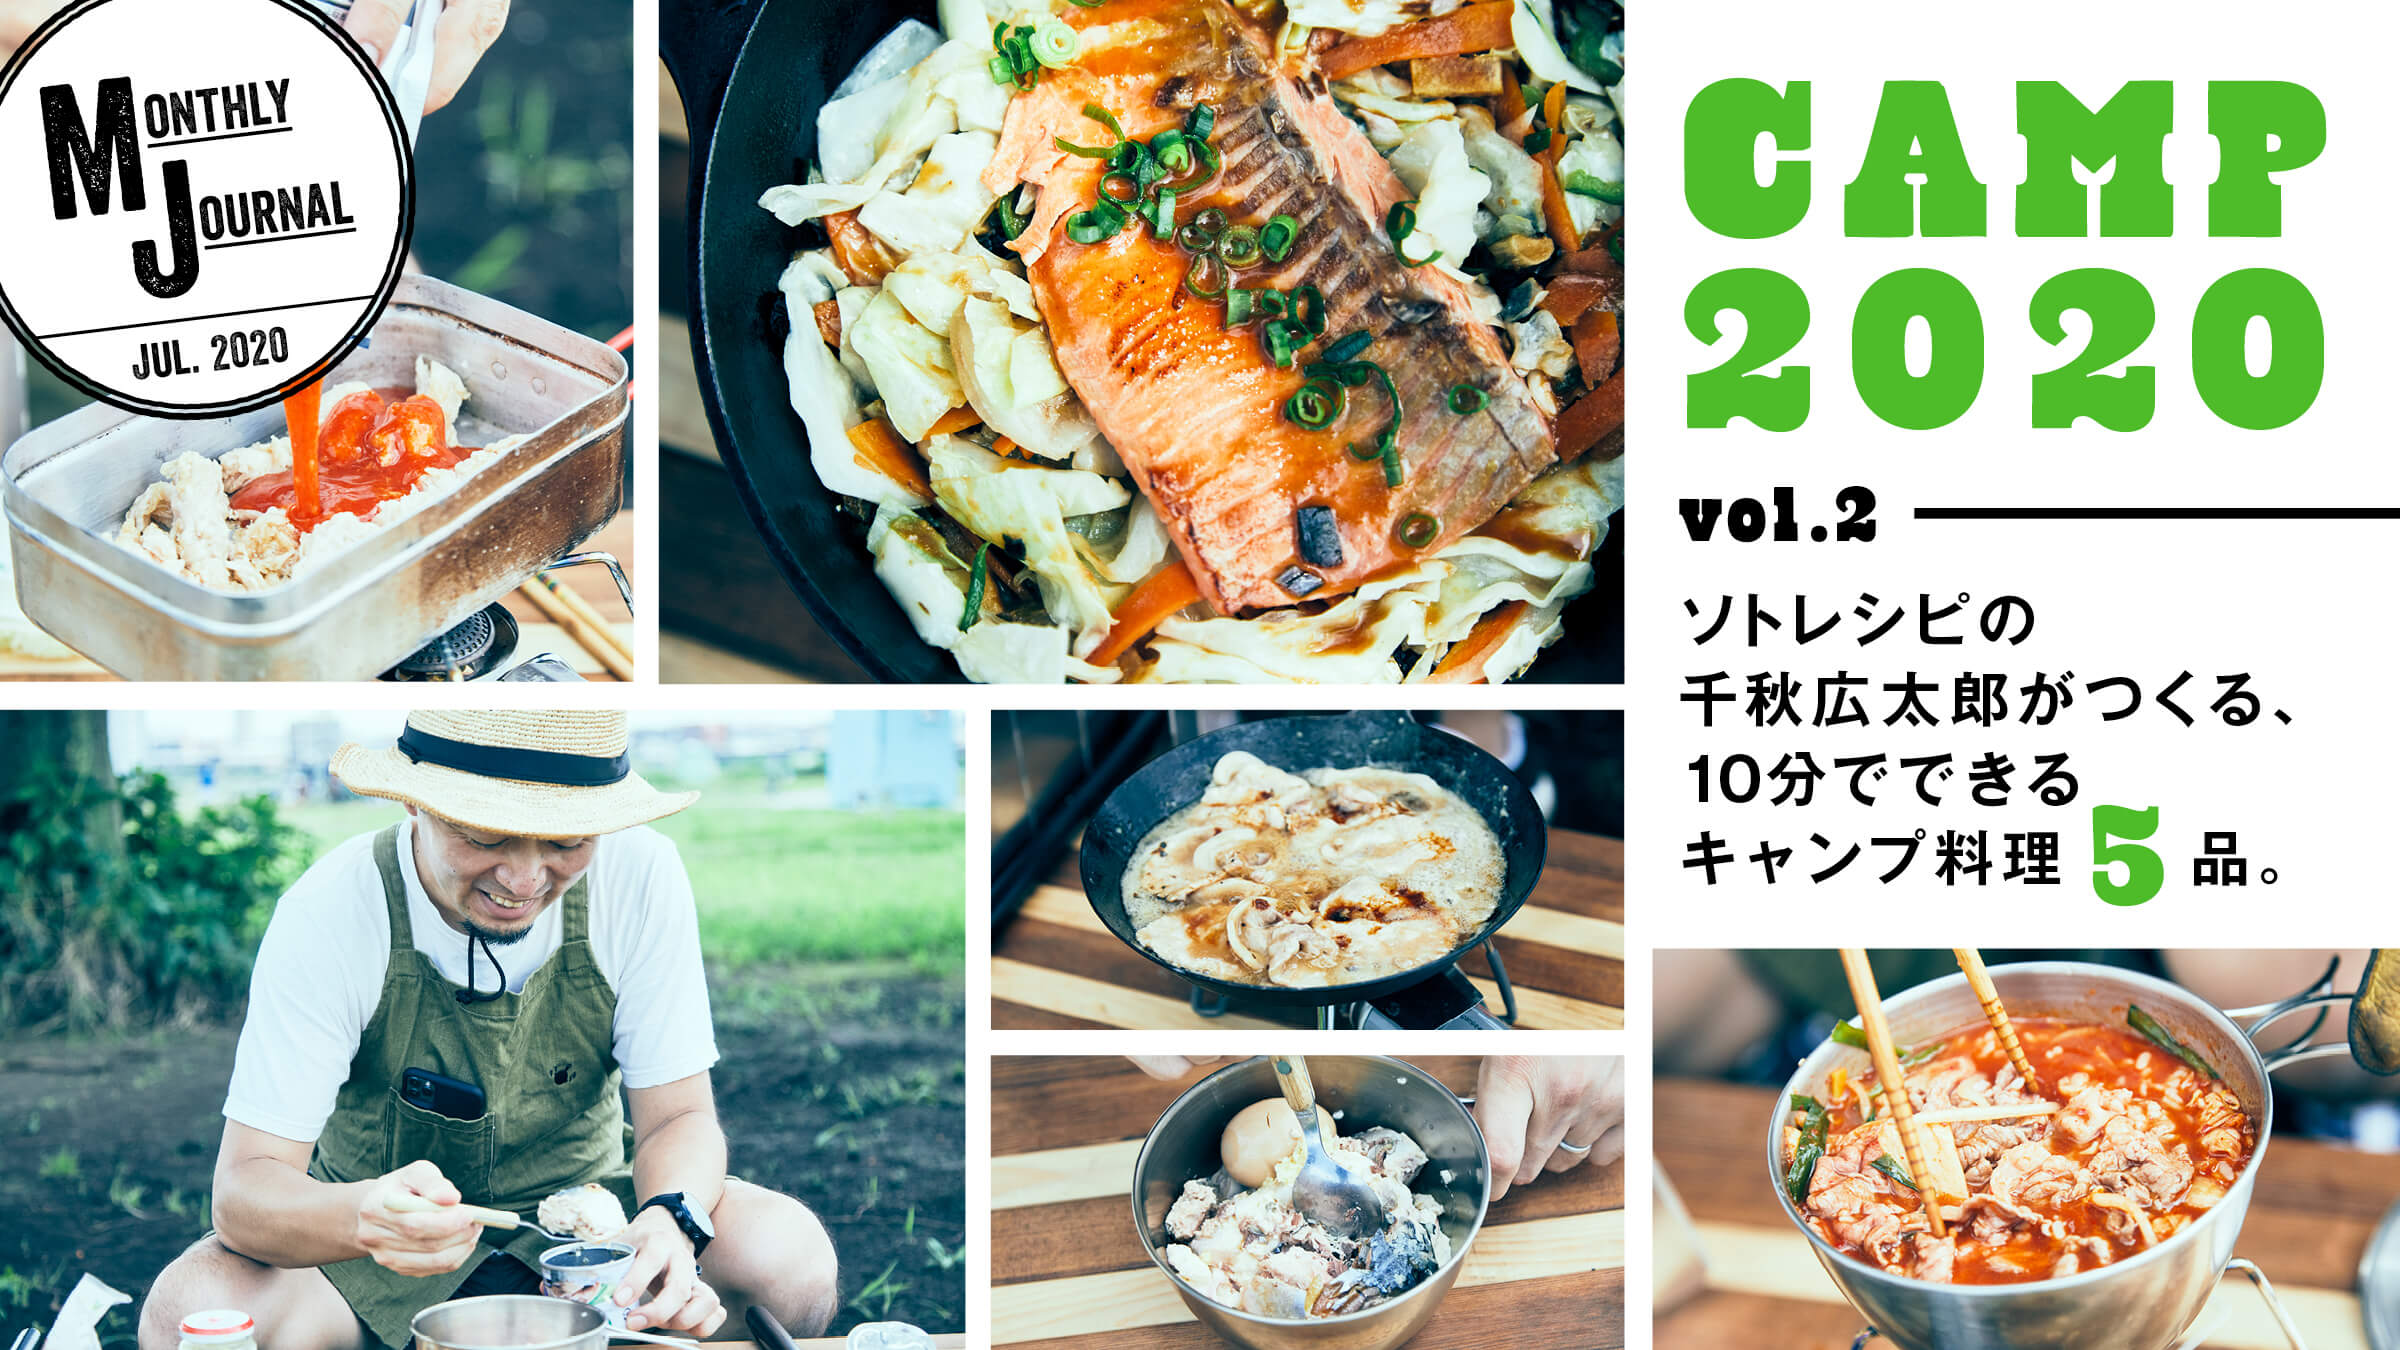 CAMP 2020  vol.2 ソトレシピの千秋広太郎がつくる、10分でできるキャンプ料理5品。